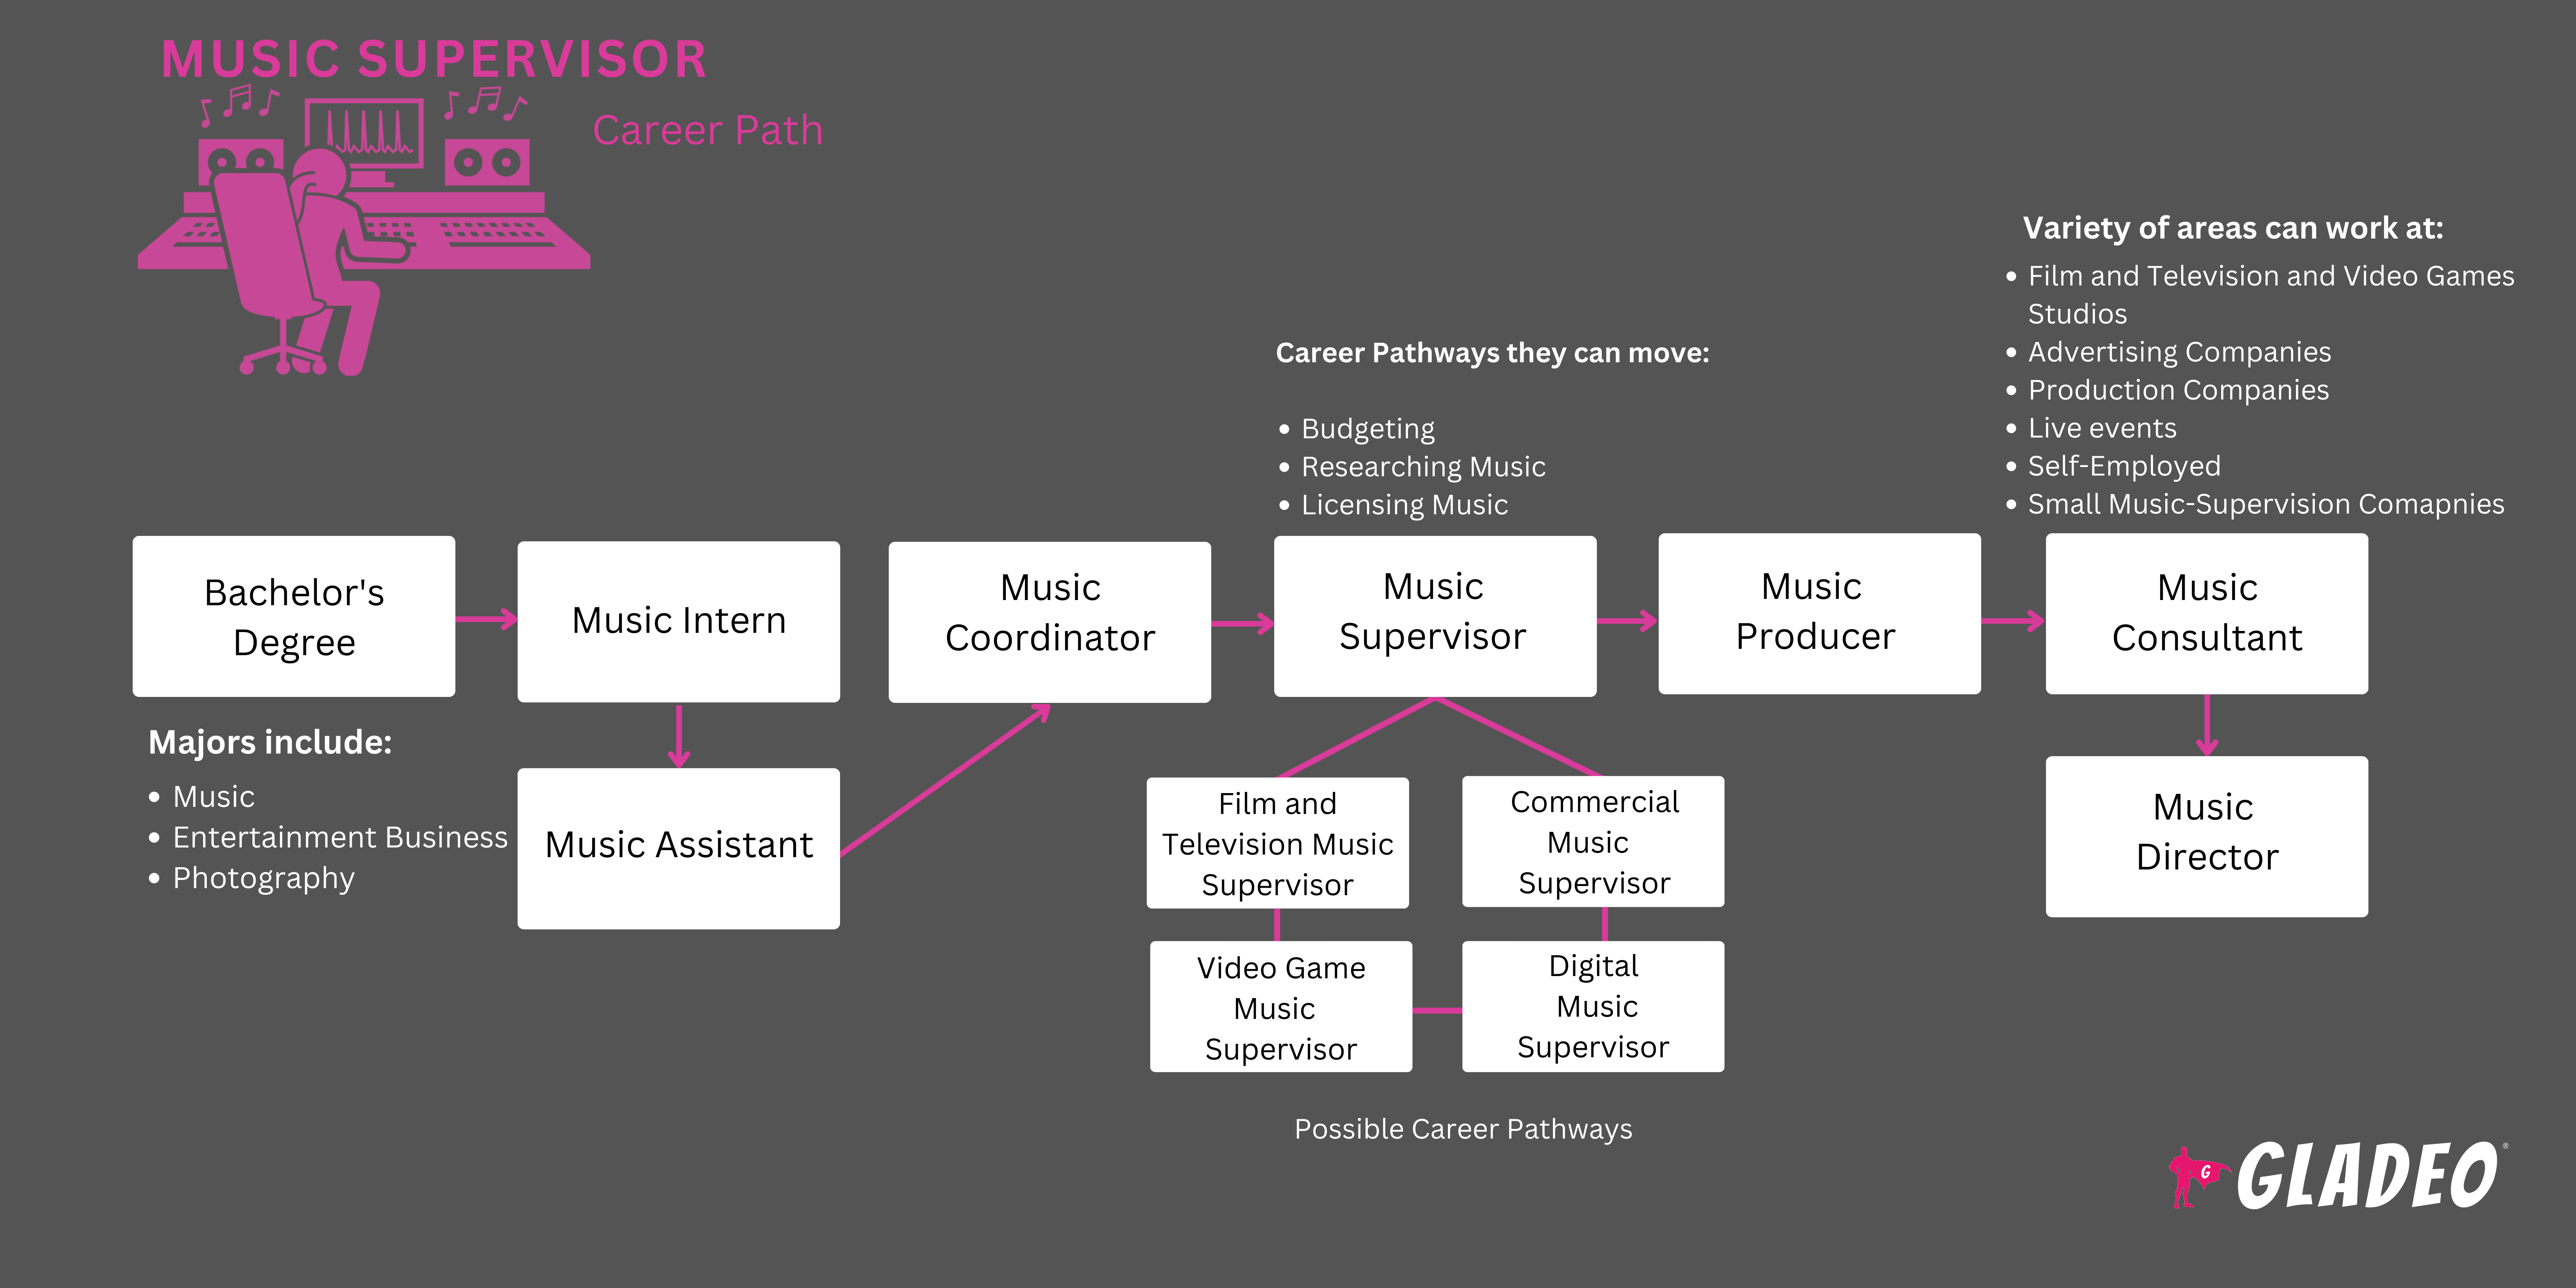 Roadmap ng Supervisor ng Musika